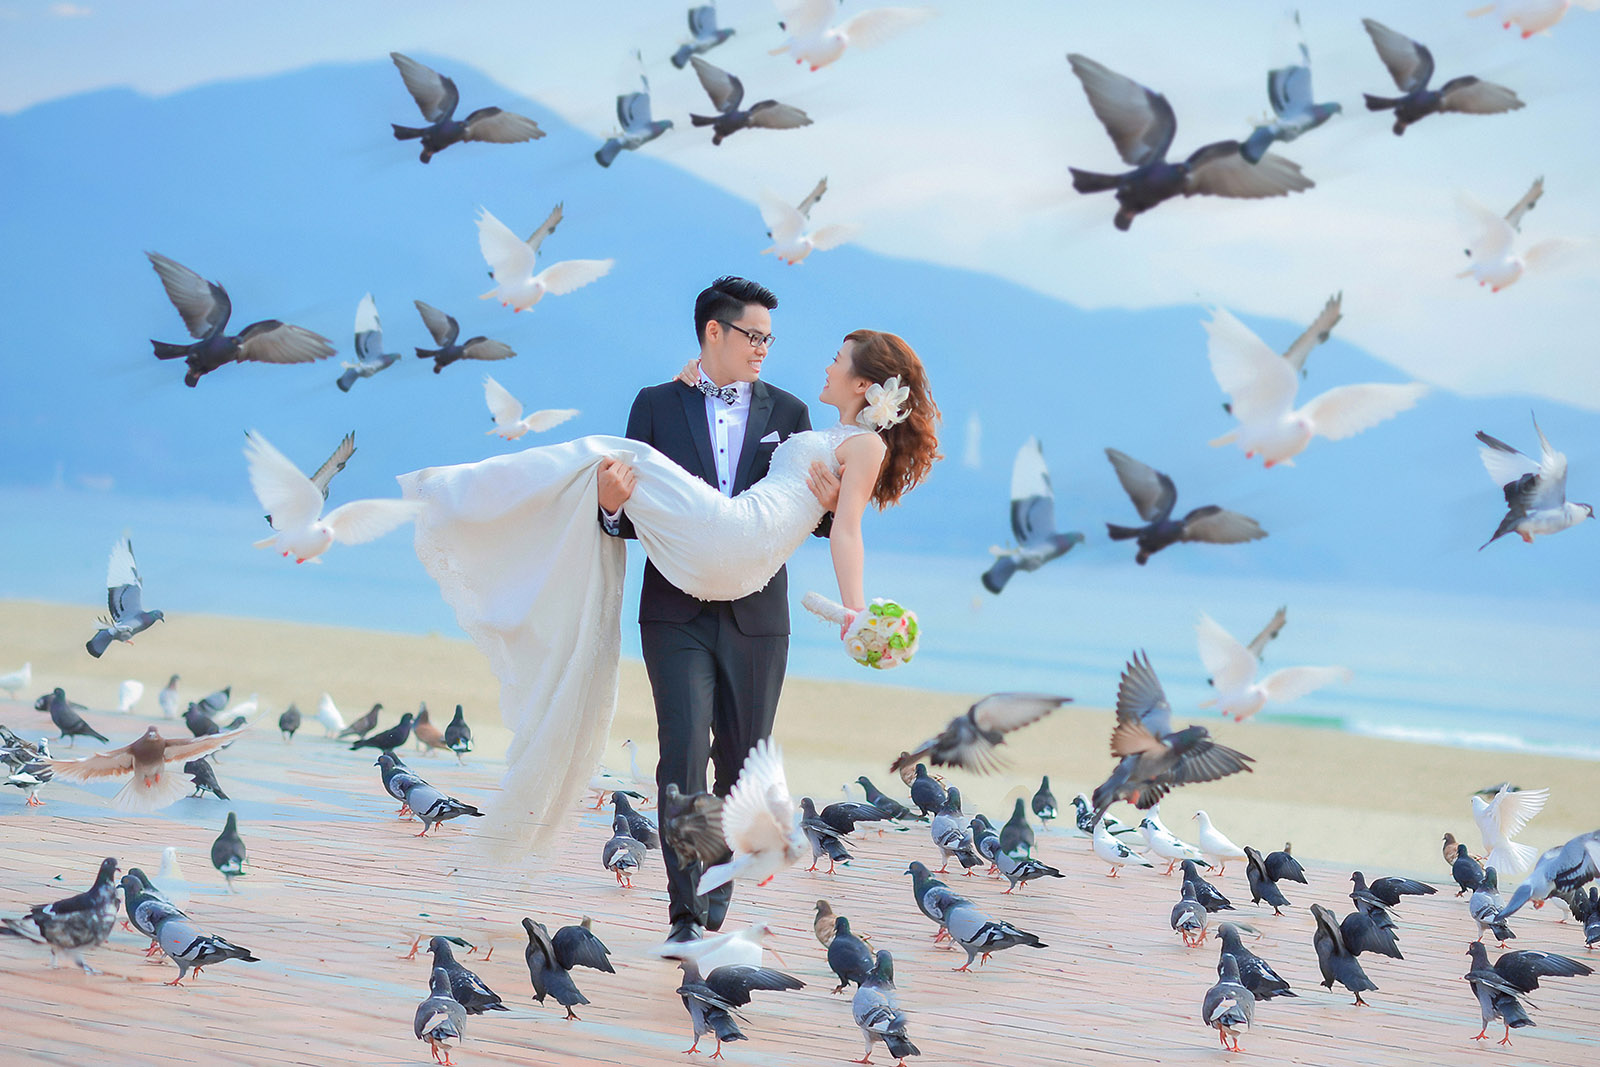 Công viên Biển Đông - địa điểm chụp ảnh cưới lãng mạn với hàng trăm chú chim bồ câu